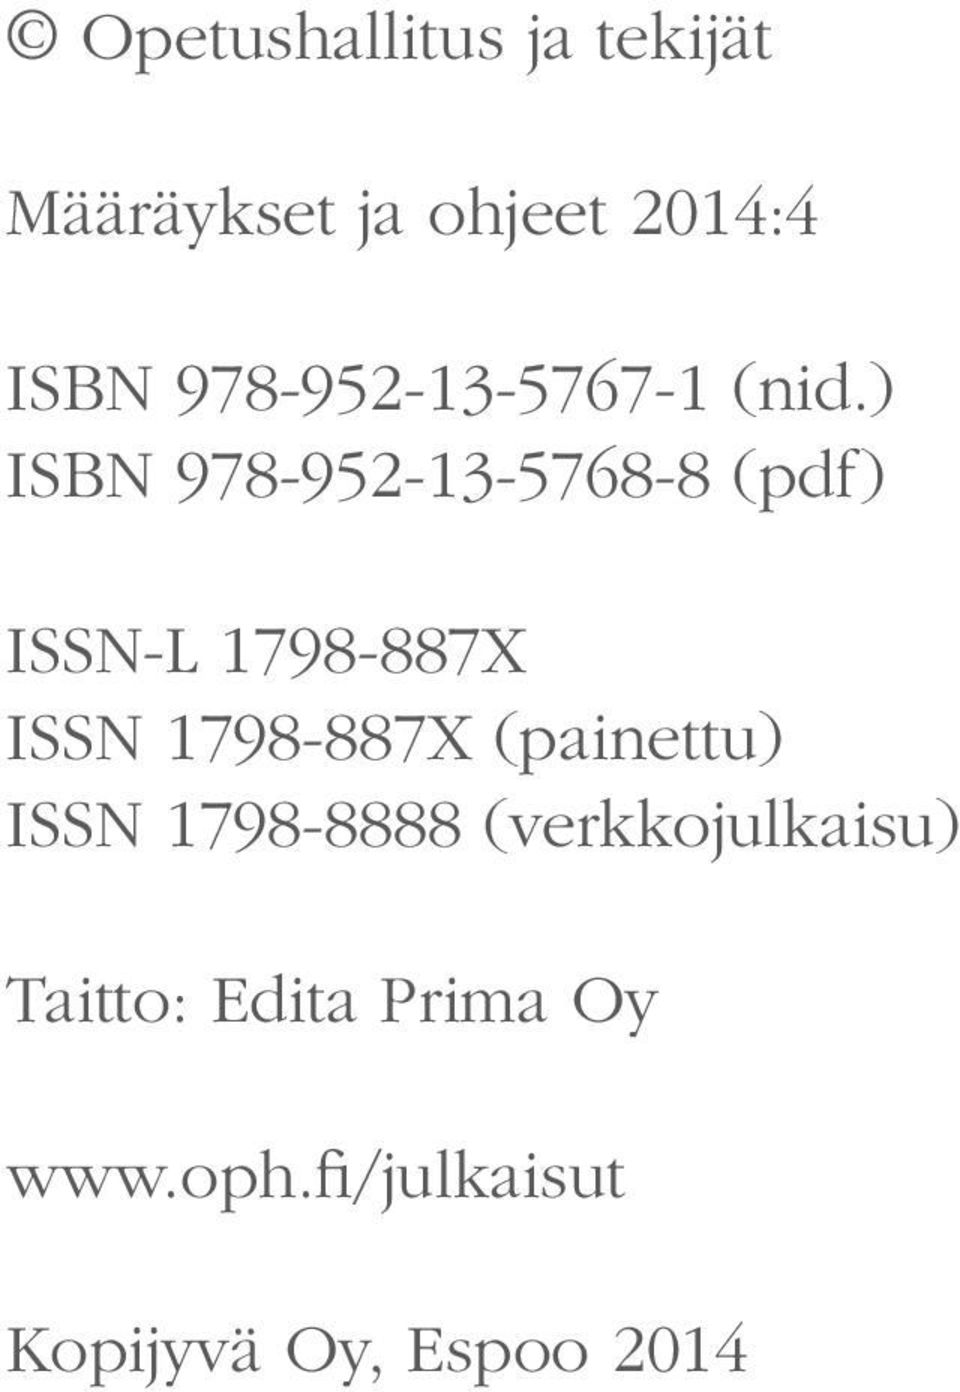 ) ISBN 978-952-13-5768-8 (pdf) ISSN-L 1798-887X ISSN 1798-887X